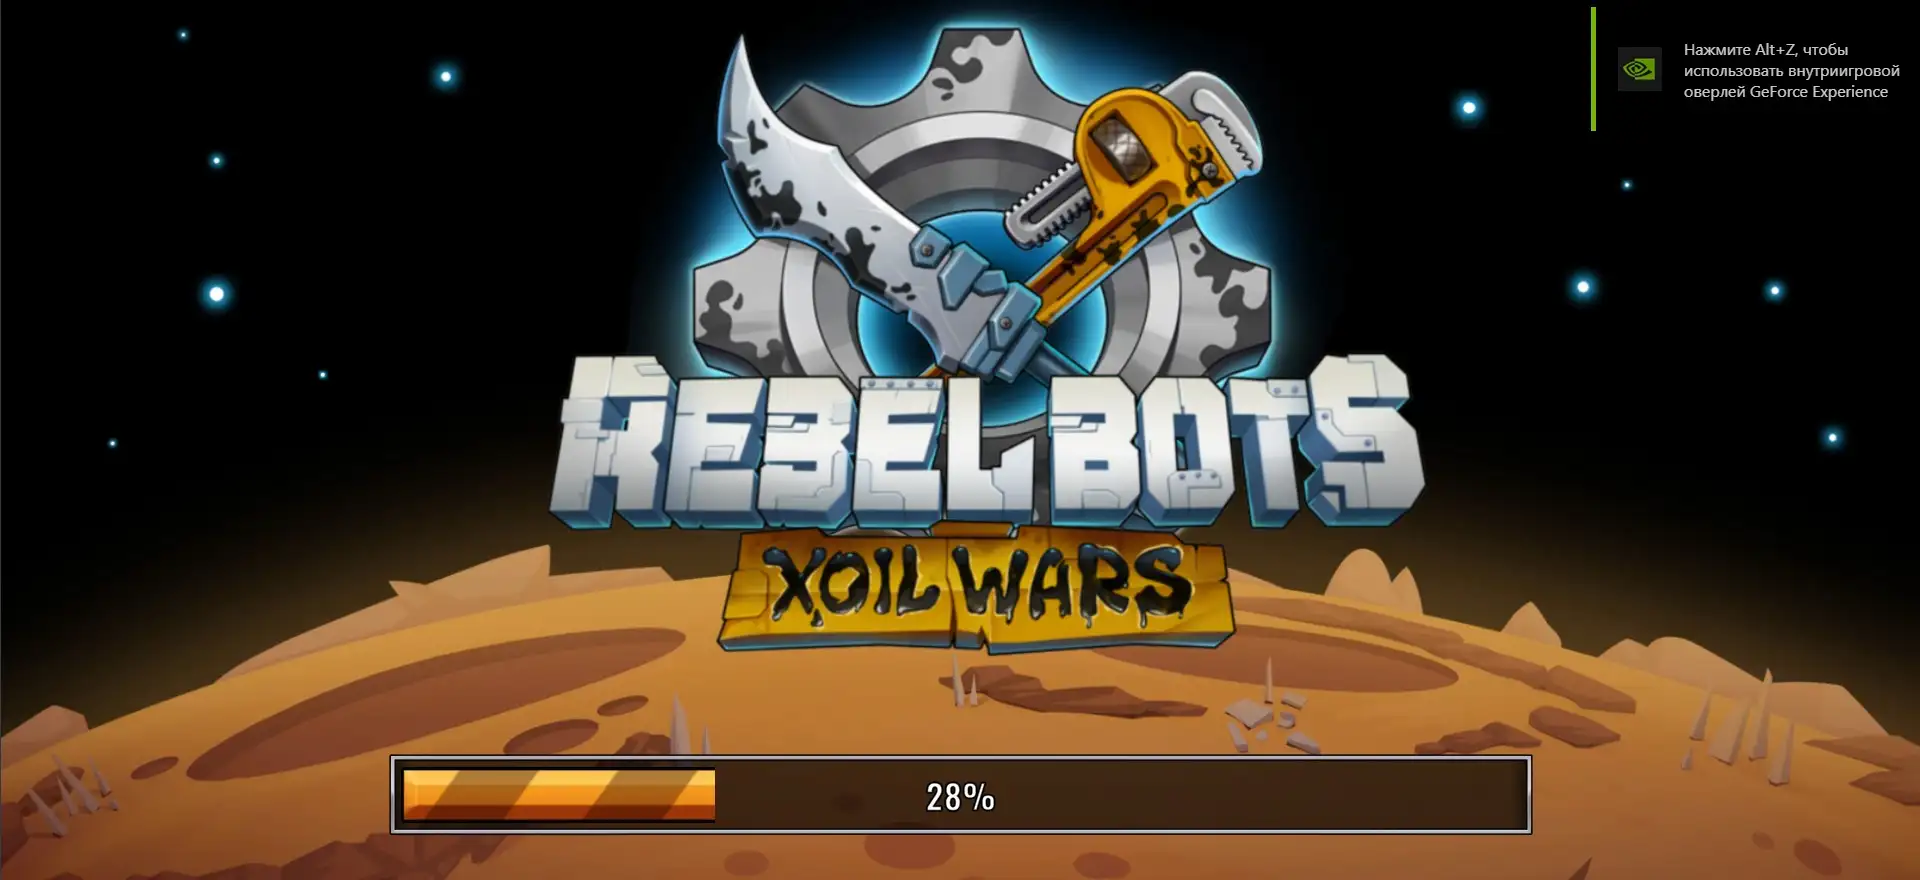 Rebel Bots Xoil Wars